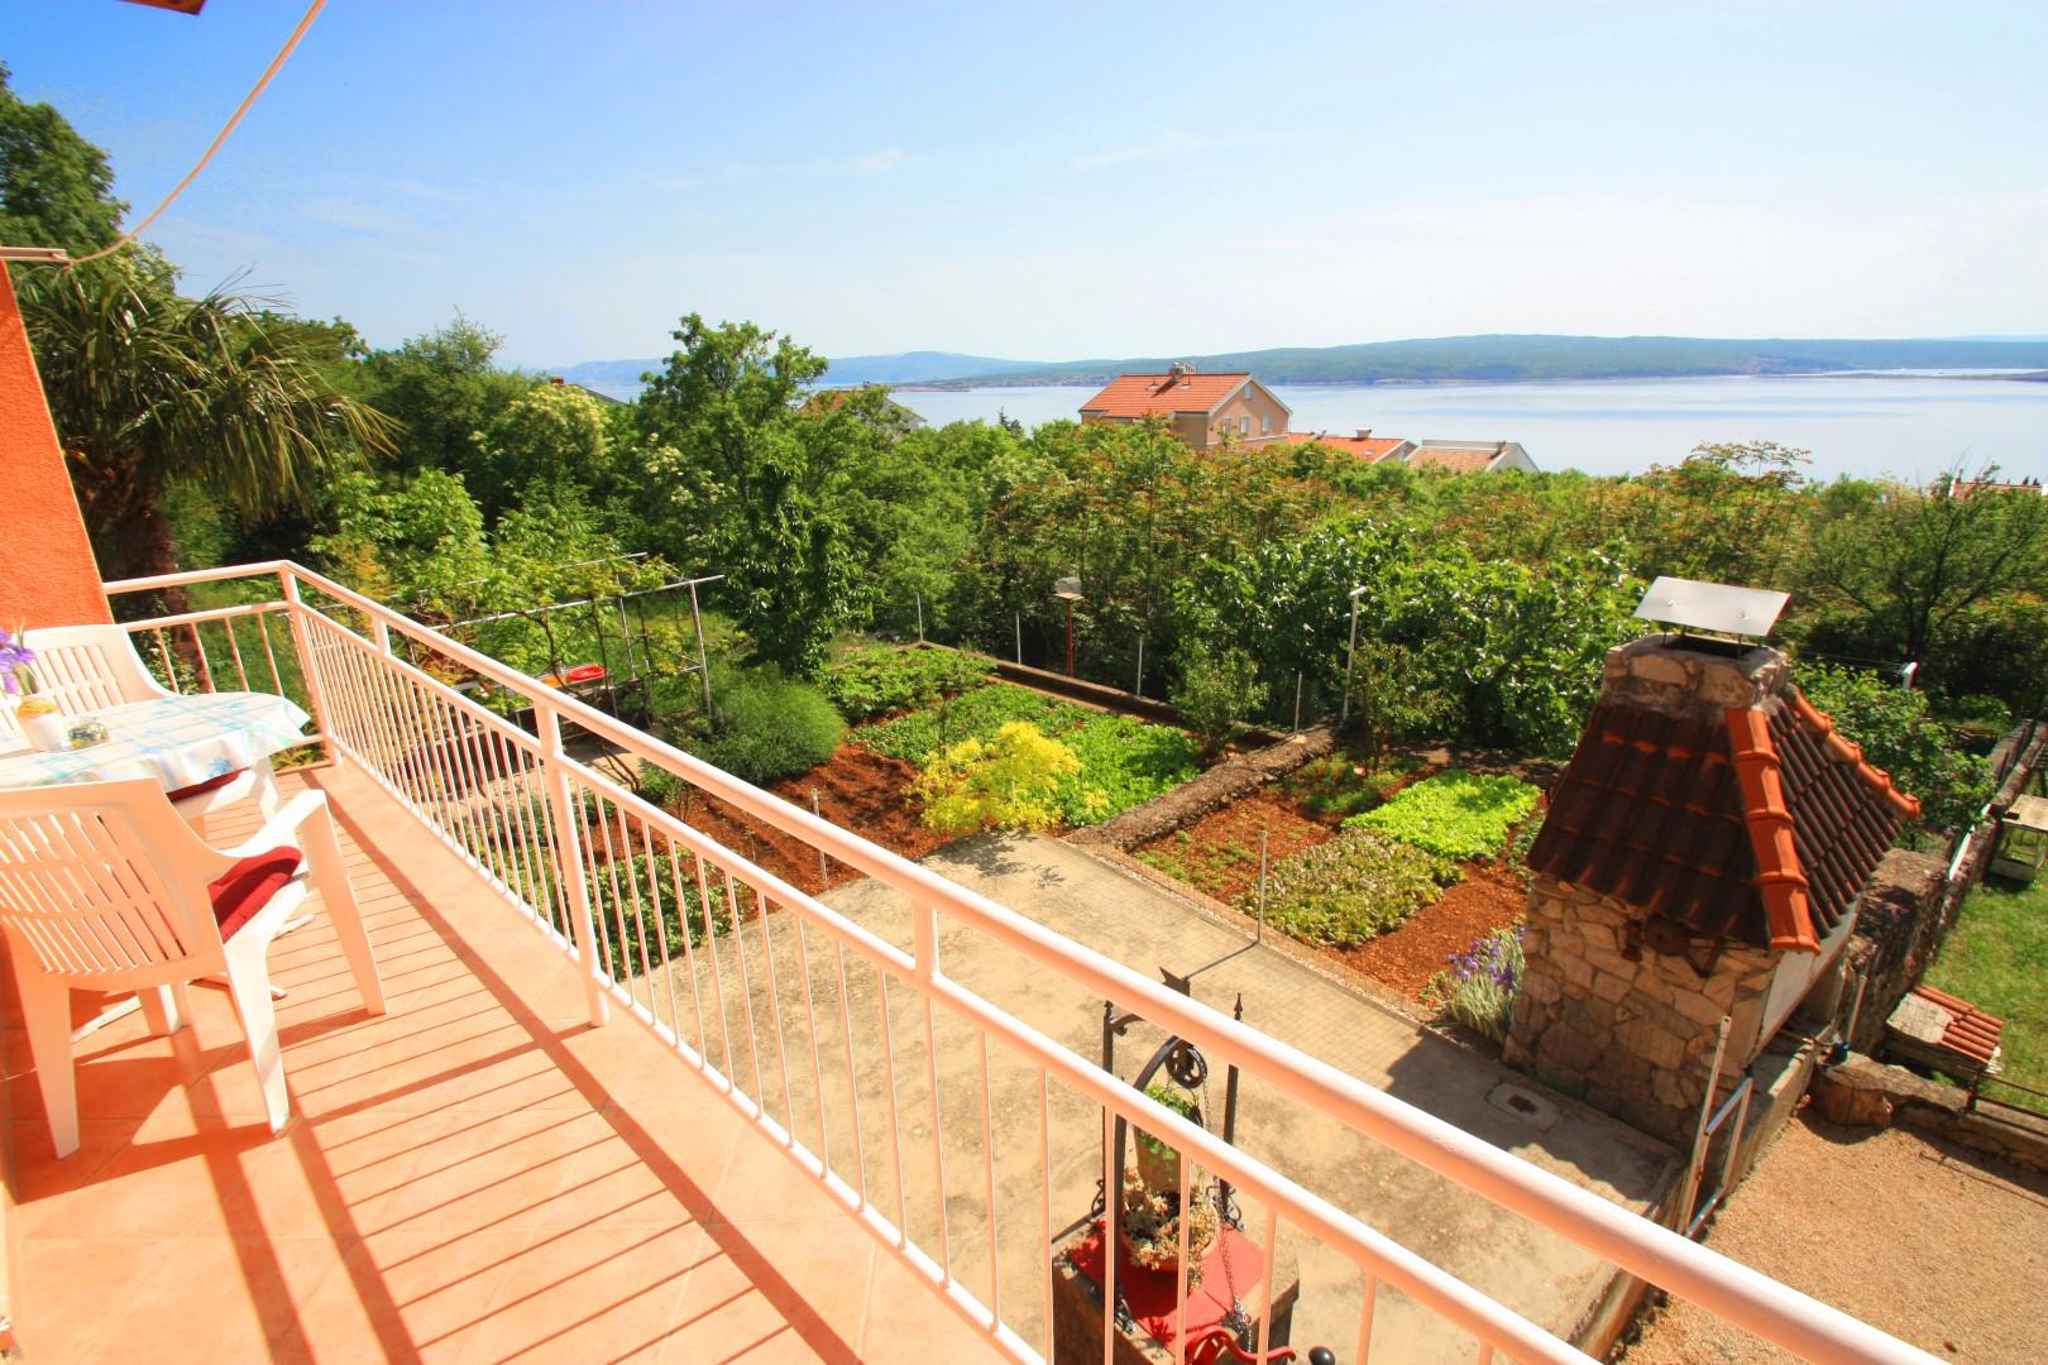 Ferienwohnung mit Balkon und Meerblick  in Kroatien